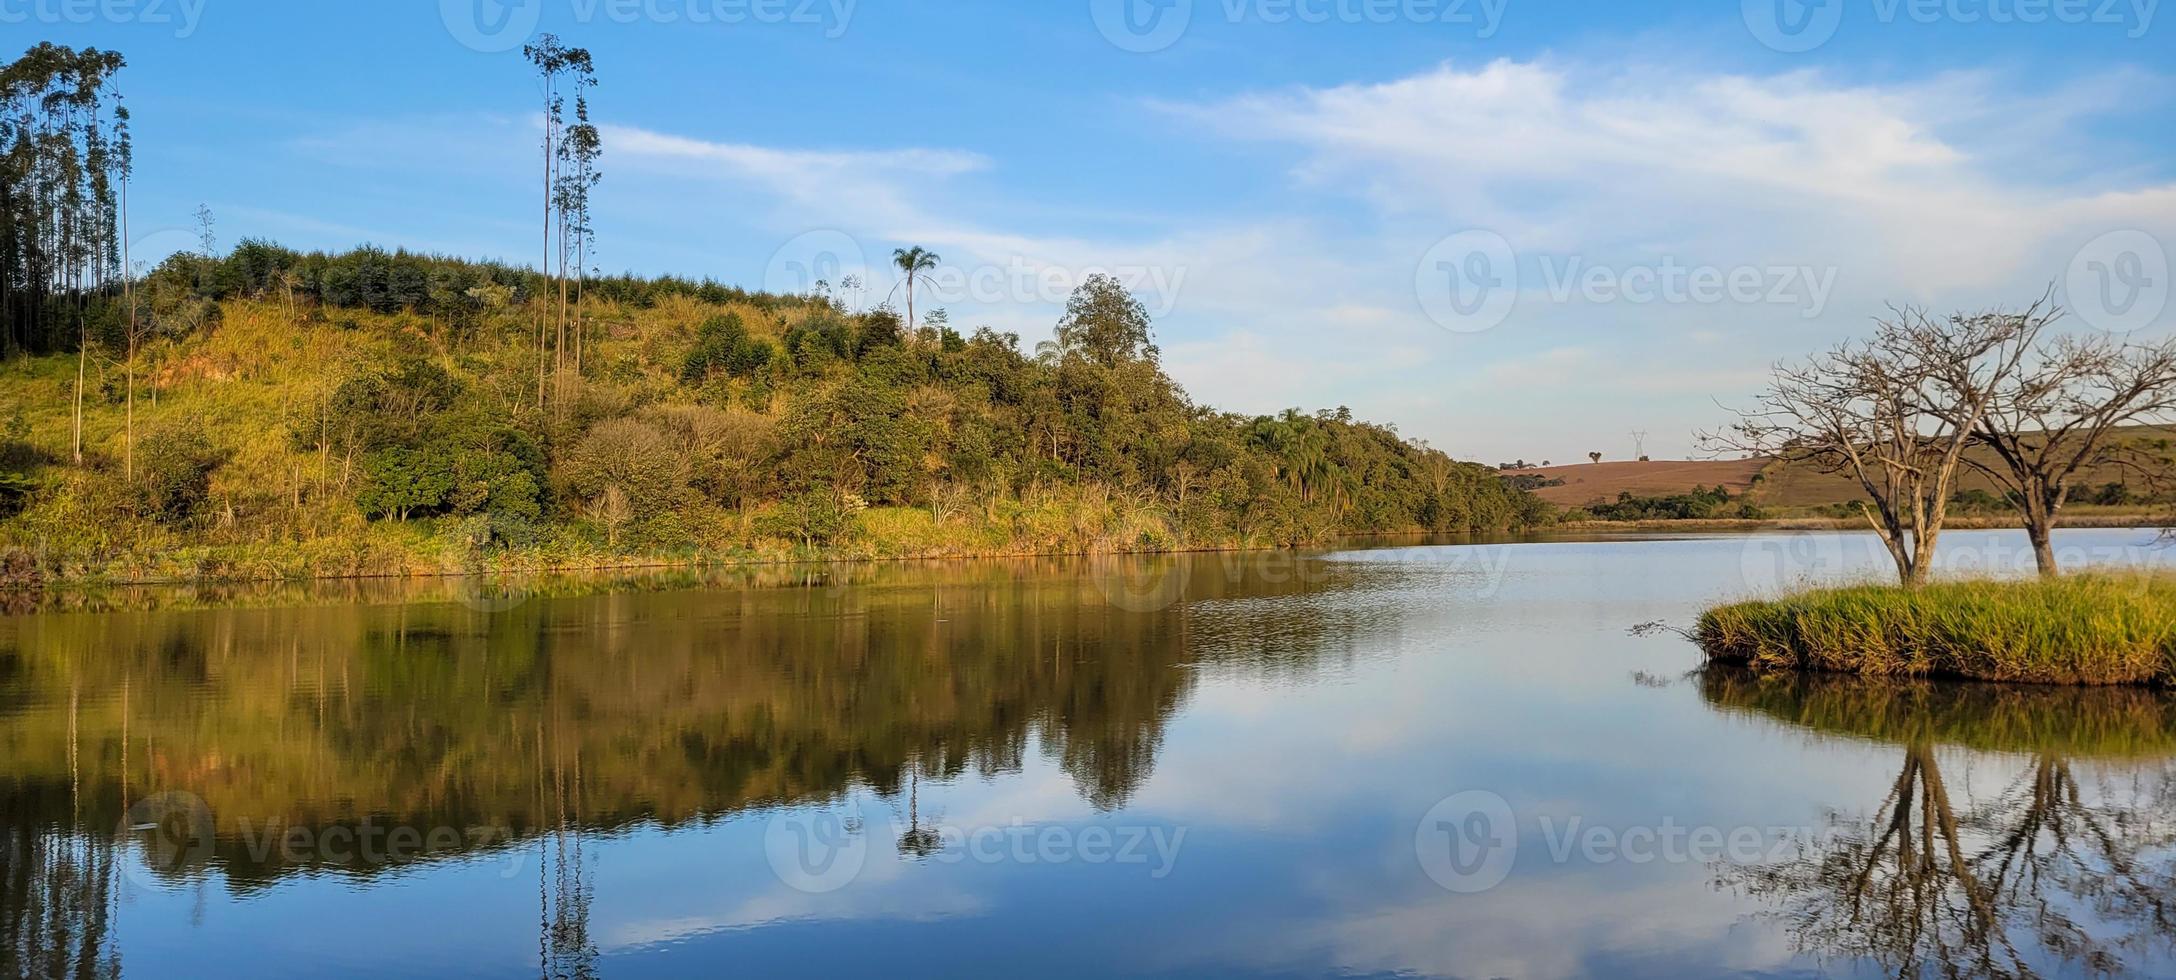 lago con paisaje natural de tierras de cultivo en el campo foto